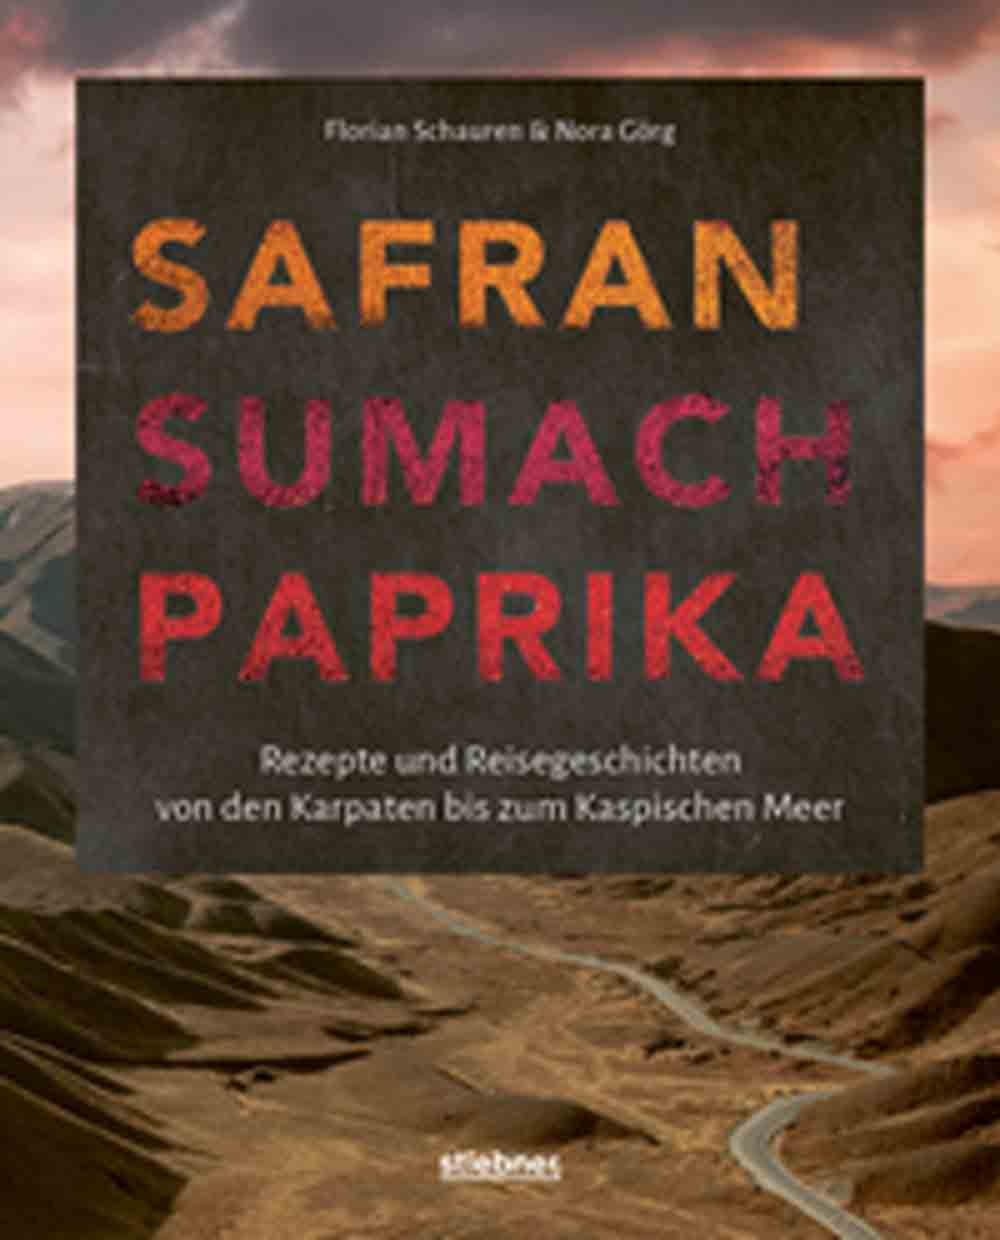 Lesetipps für Gütersloh: Safran, Sumach, Paprika, Rezepte und Reisegeschichten von den Karpaten bis zum Kaspischen Meer